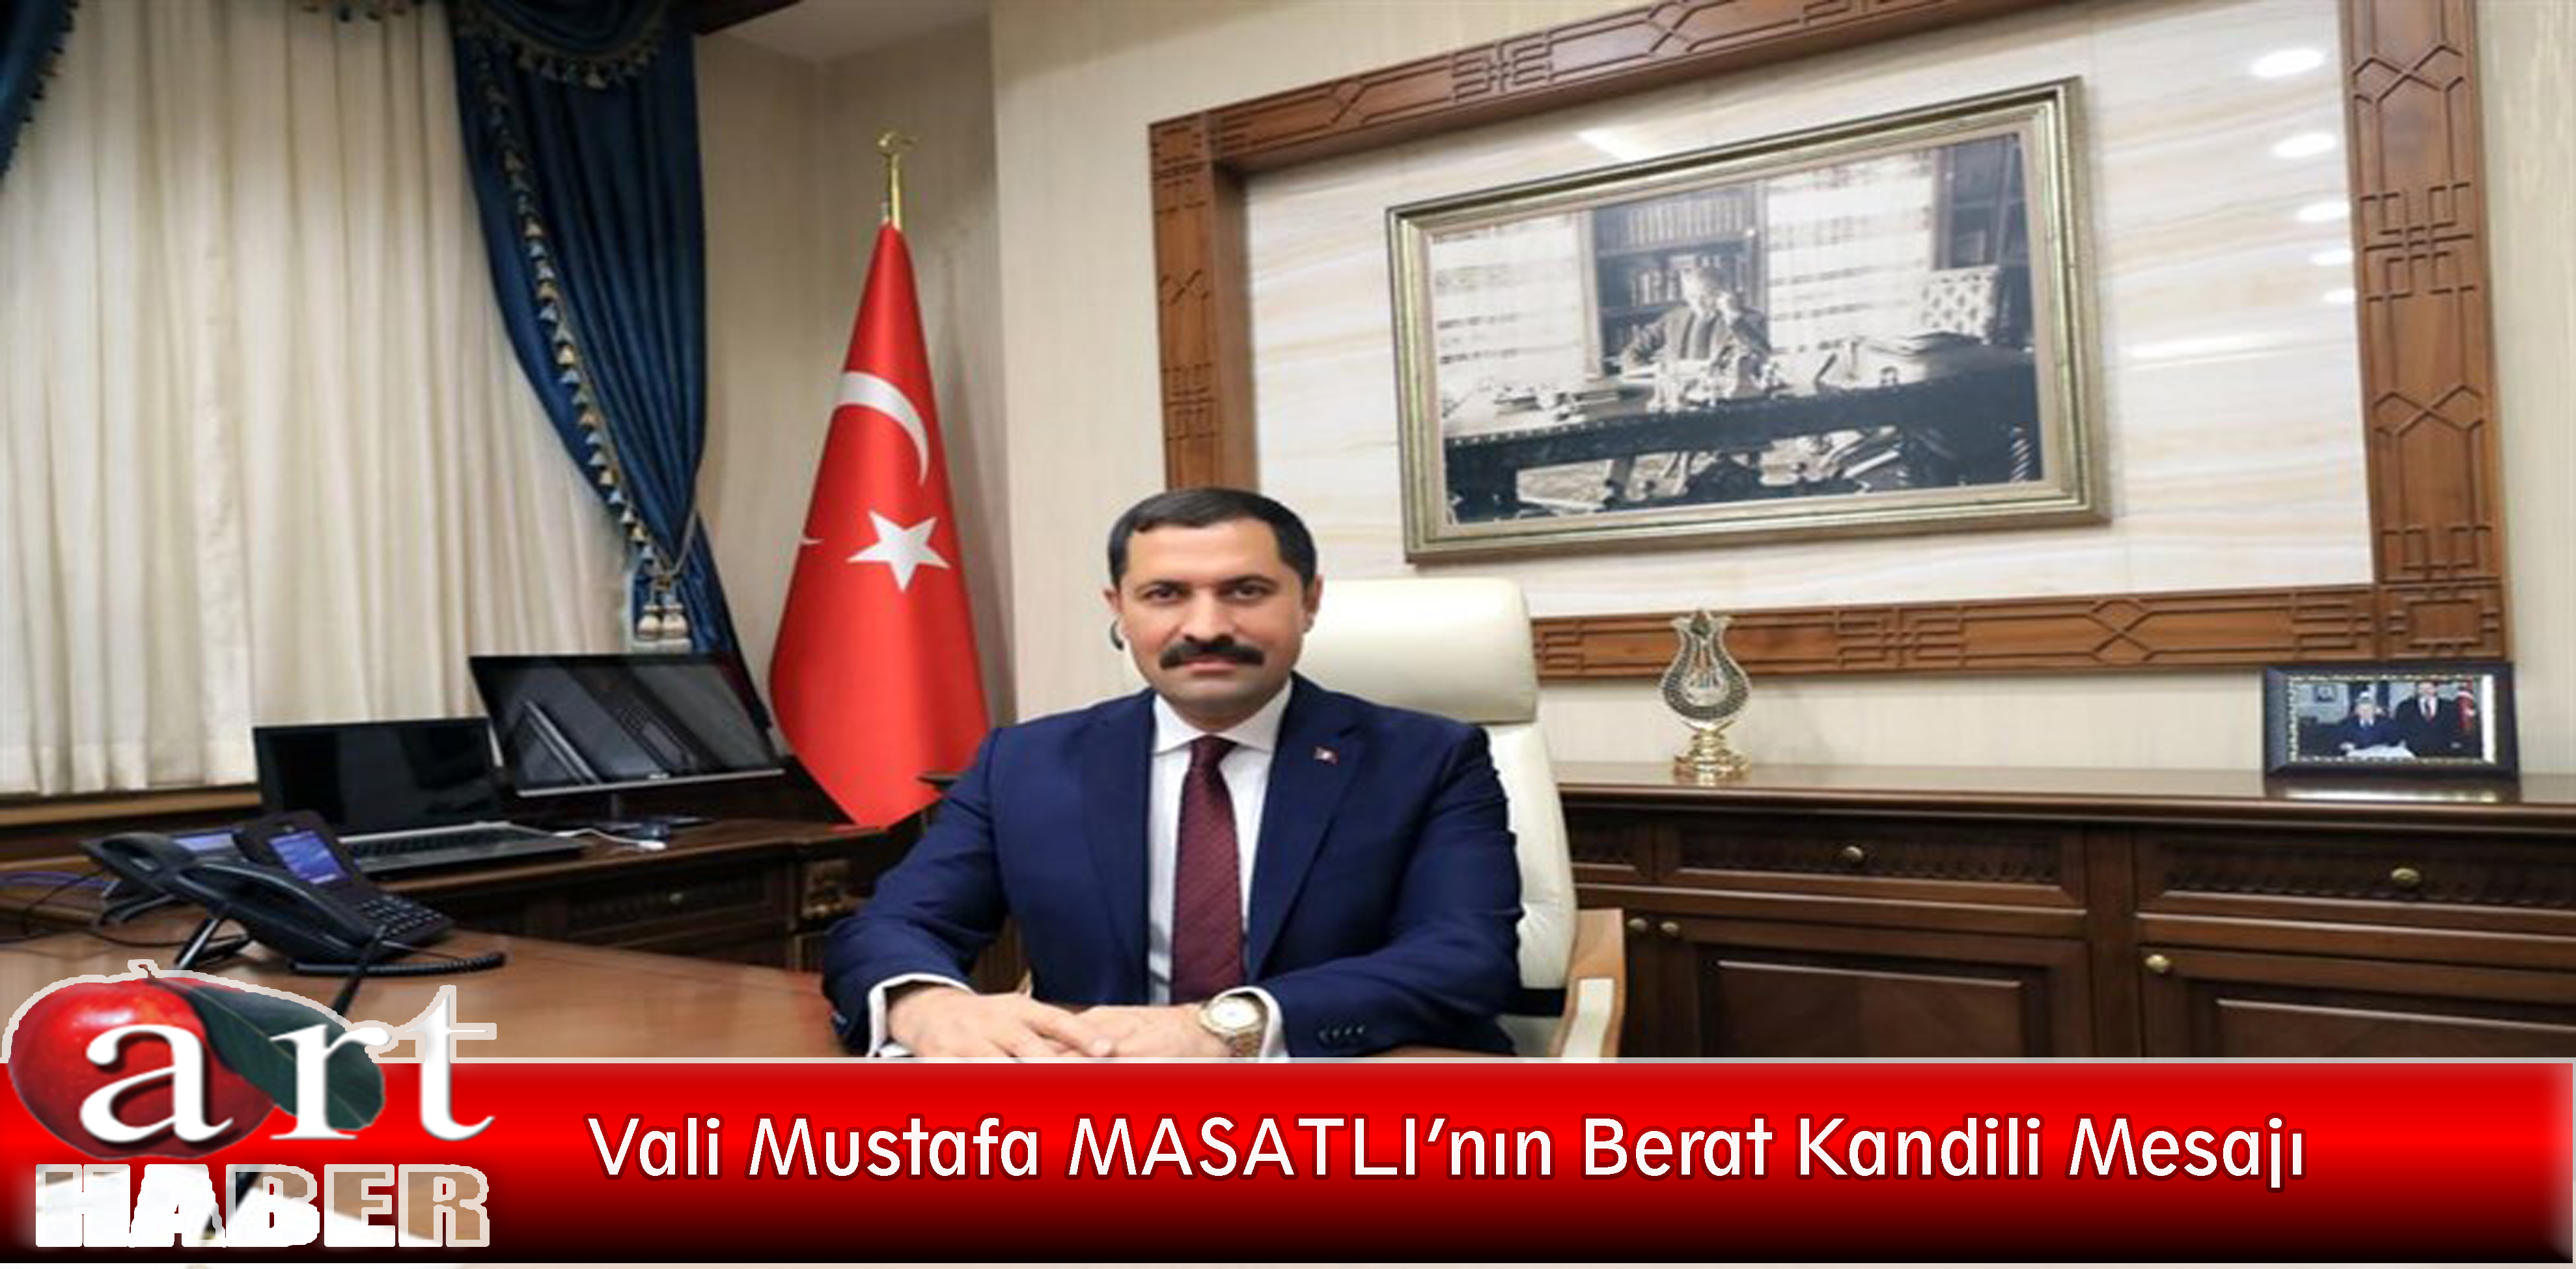 Valimiz Mustafa MASATLI’nın Berat Kandili Mesajı